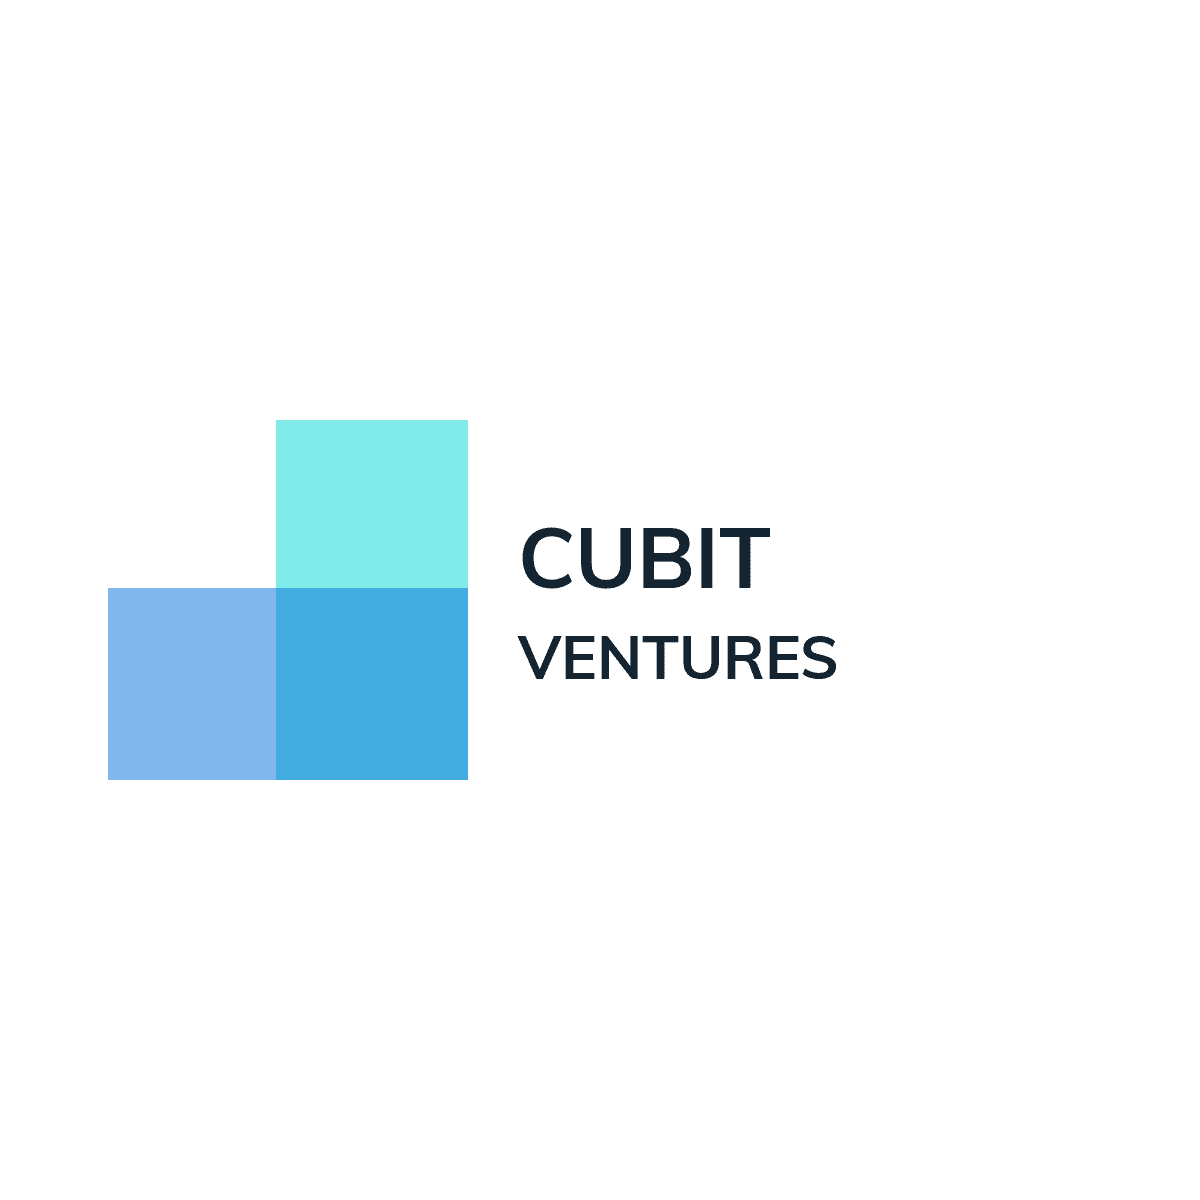 CUBIT Ventures